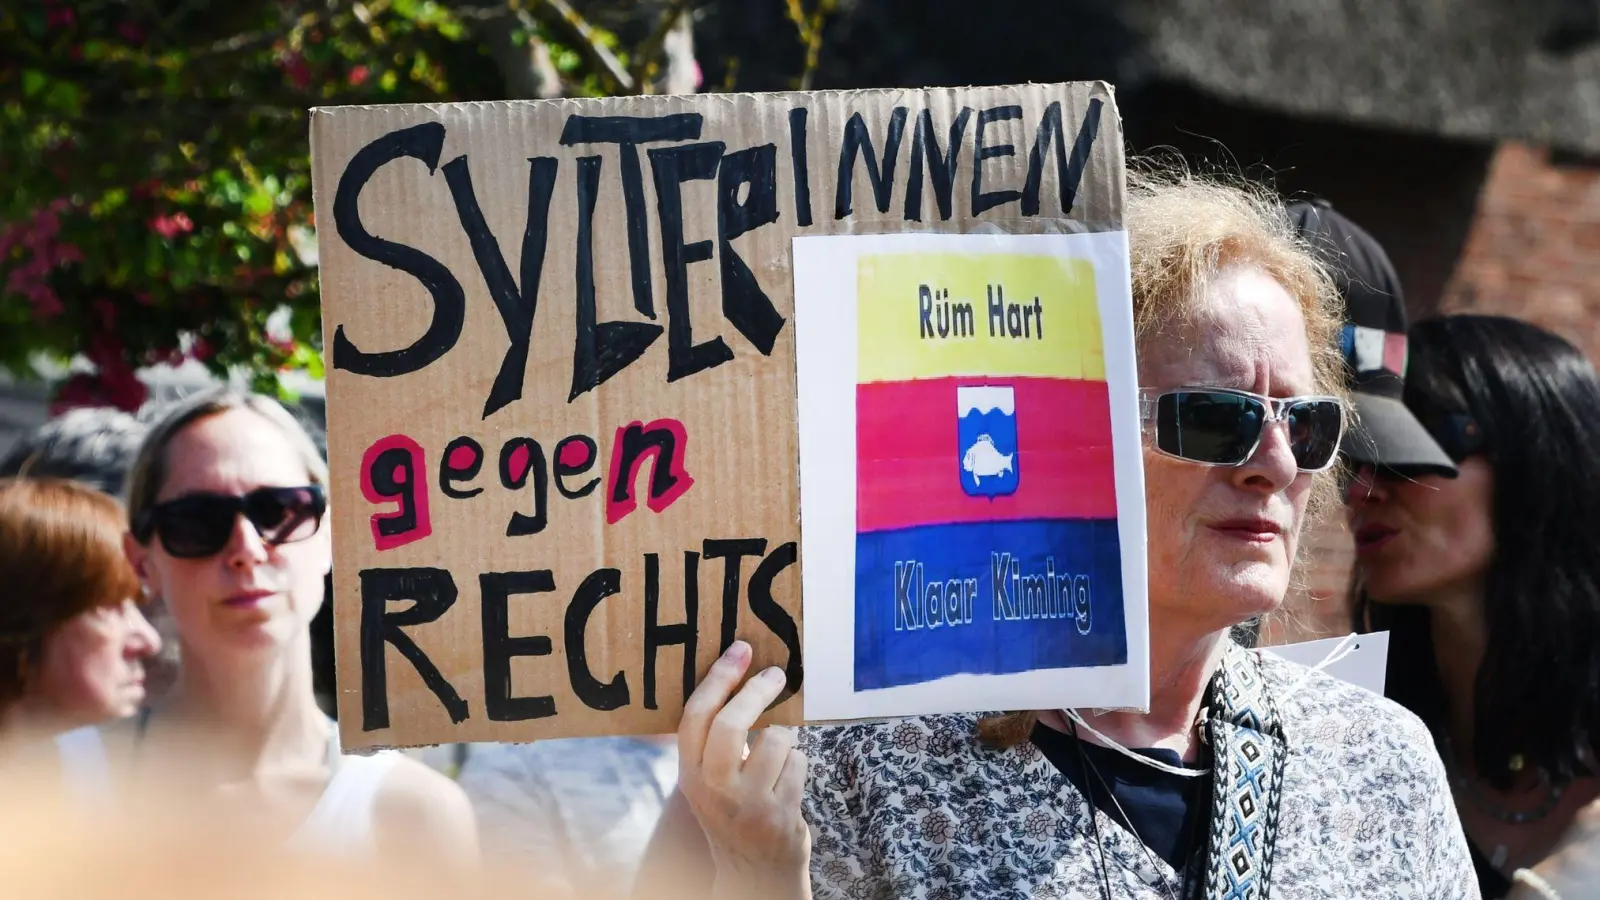 Dutzende Menschen versammeln sich zu einer Mahnwache auf Sylt. Sie wollen ein Zeichen gegen Rechtsextremismus setzen. (Foto: Lea Sarah Albert/dpa)